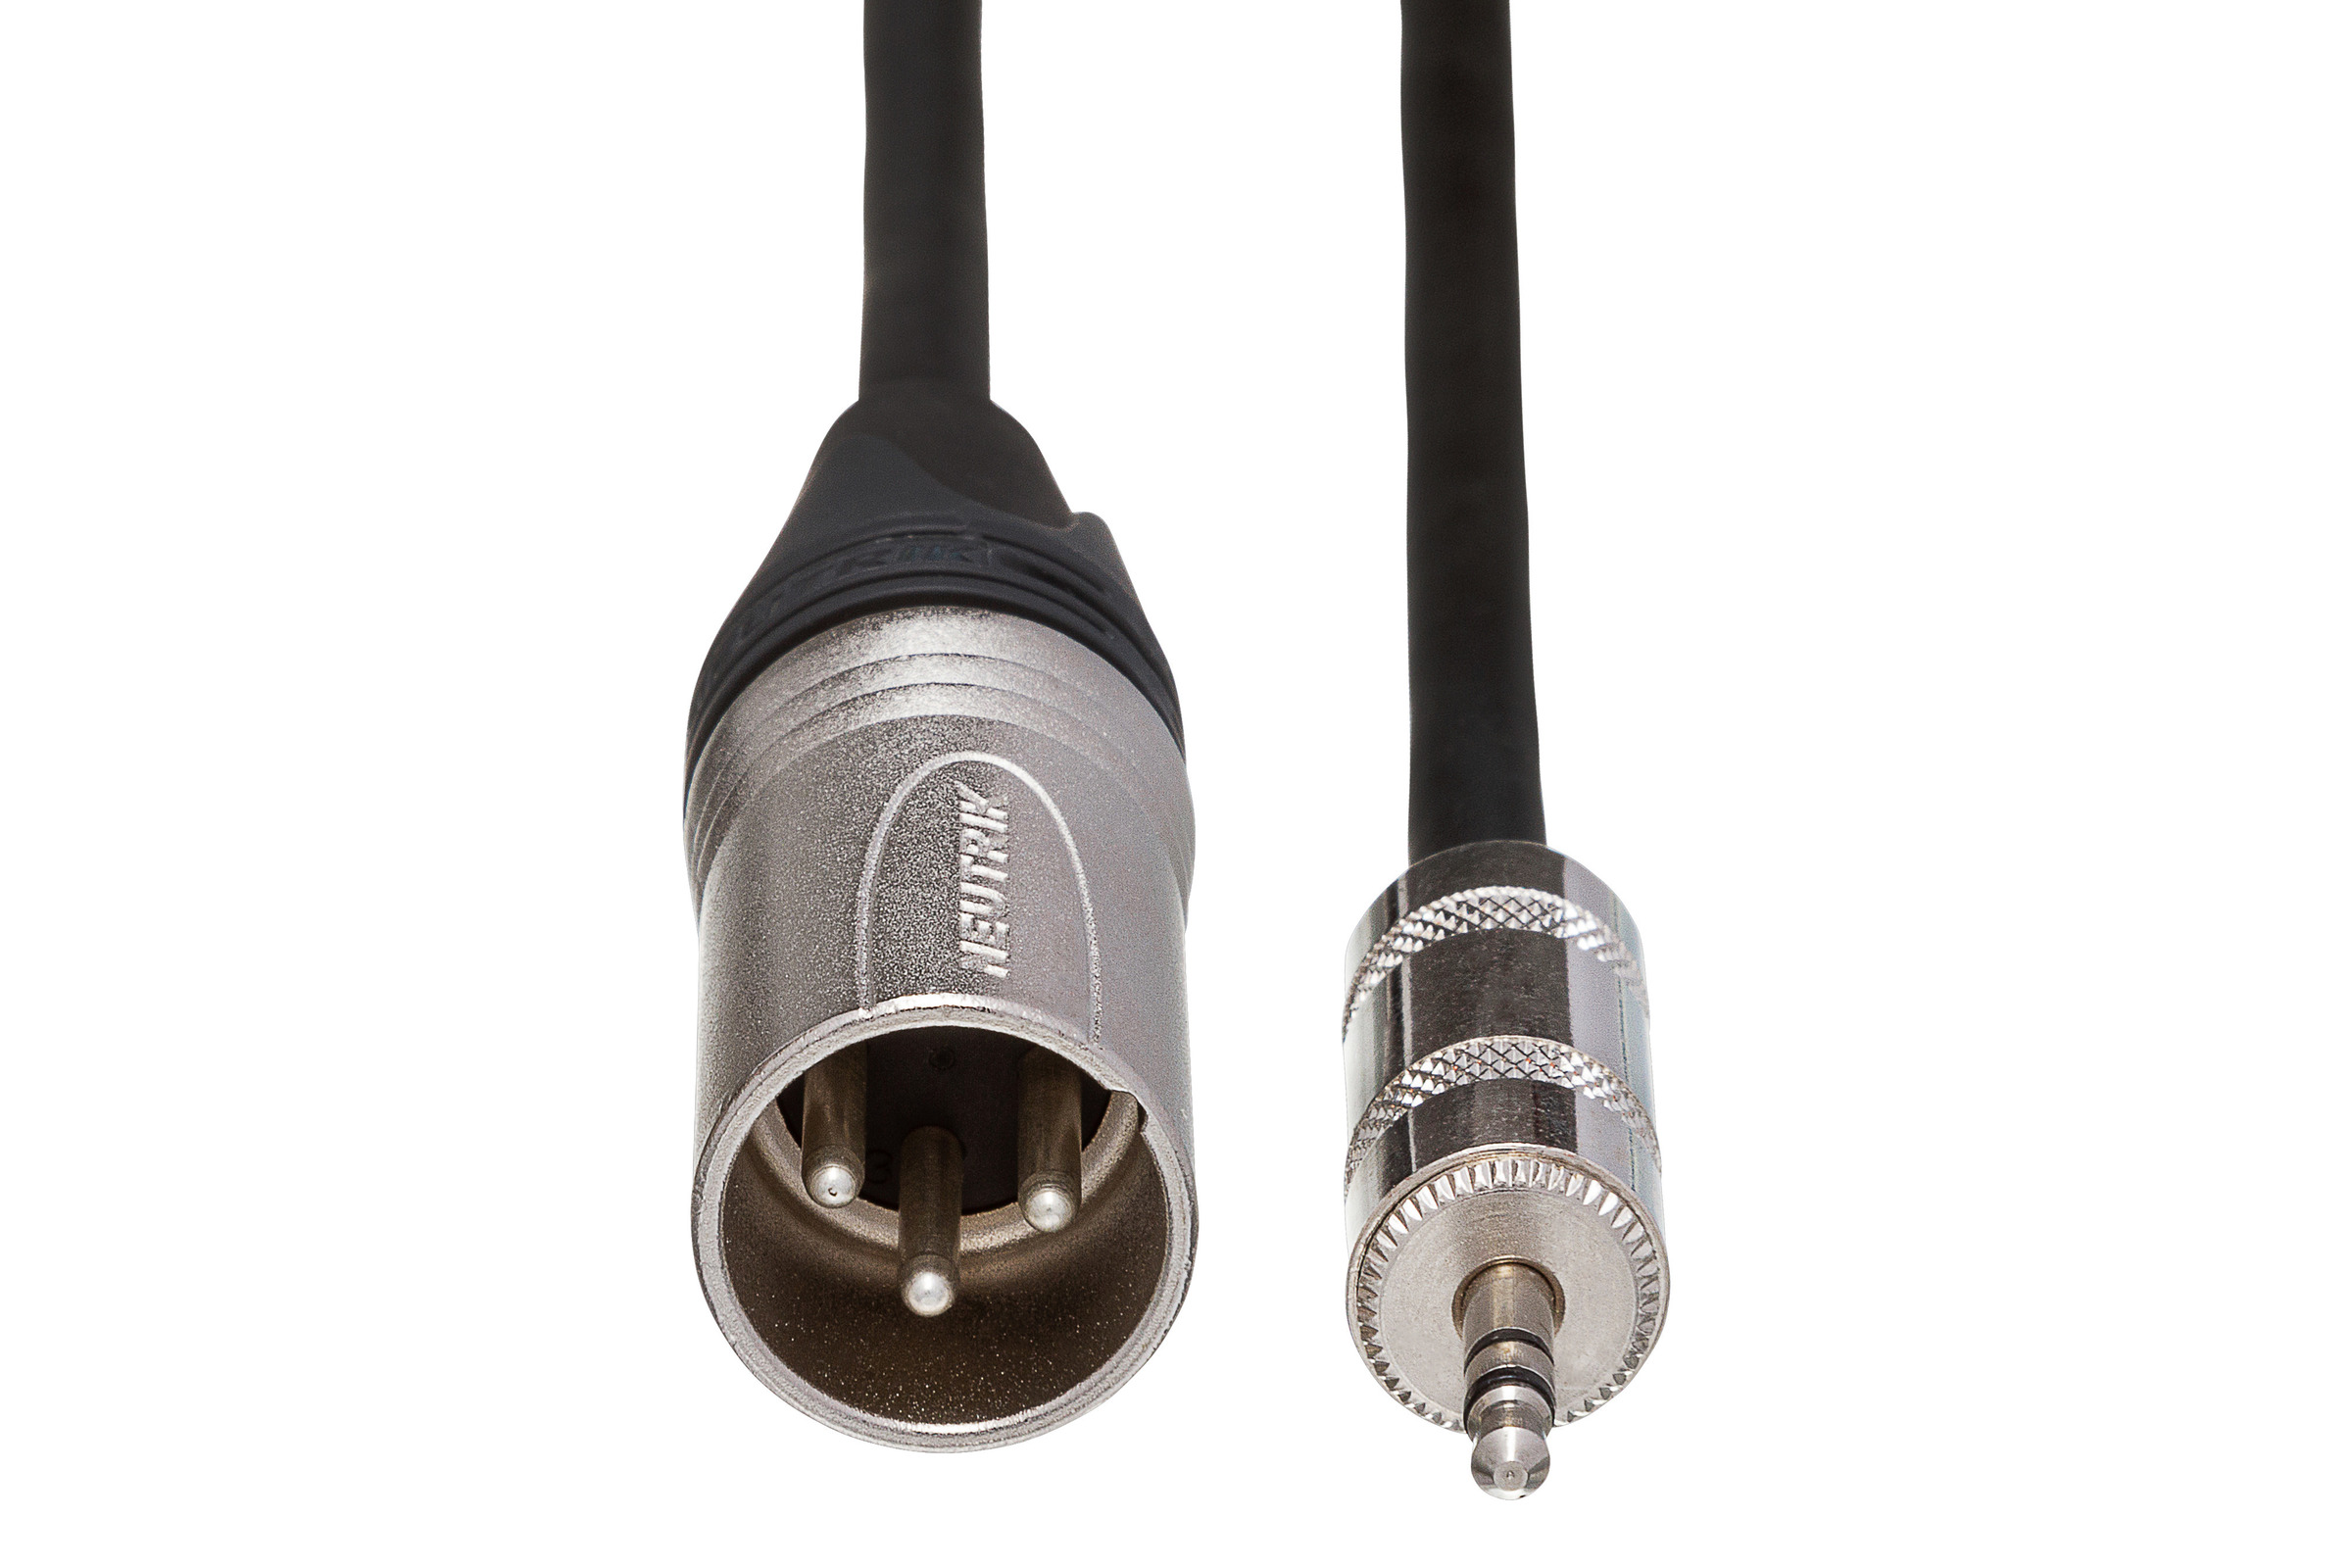 MAGNUS Jack 3.5 - Cable de señal de audio estéreo Hi-End Jack 3.5